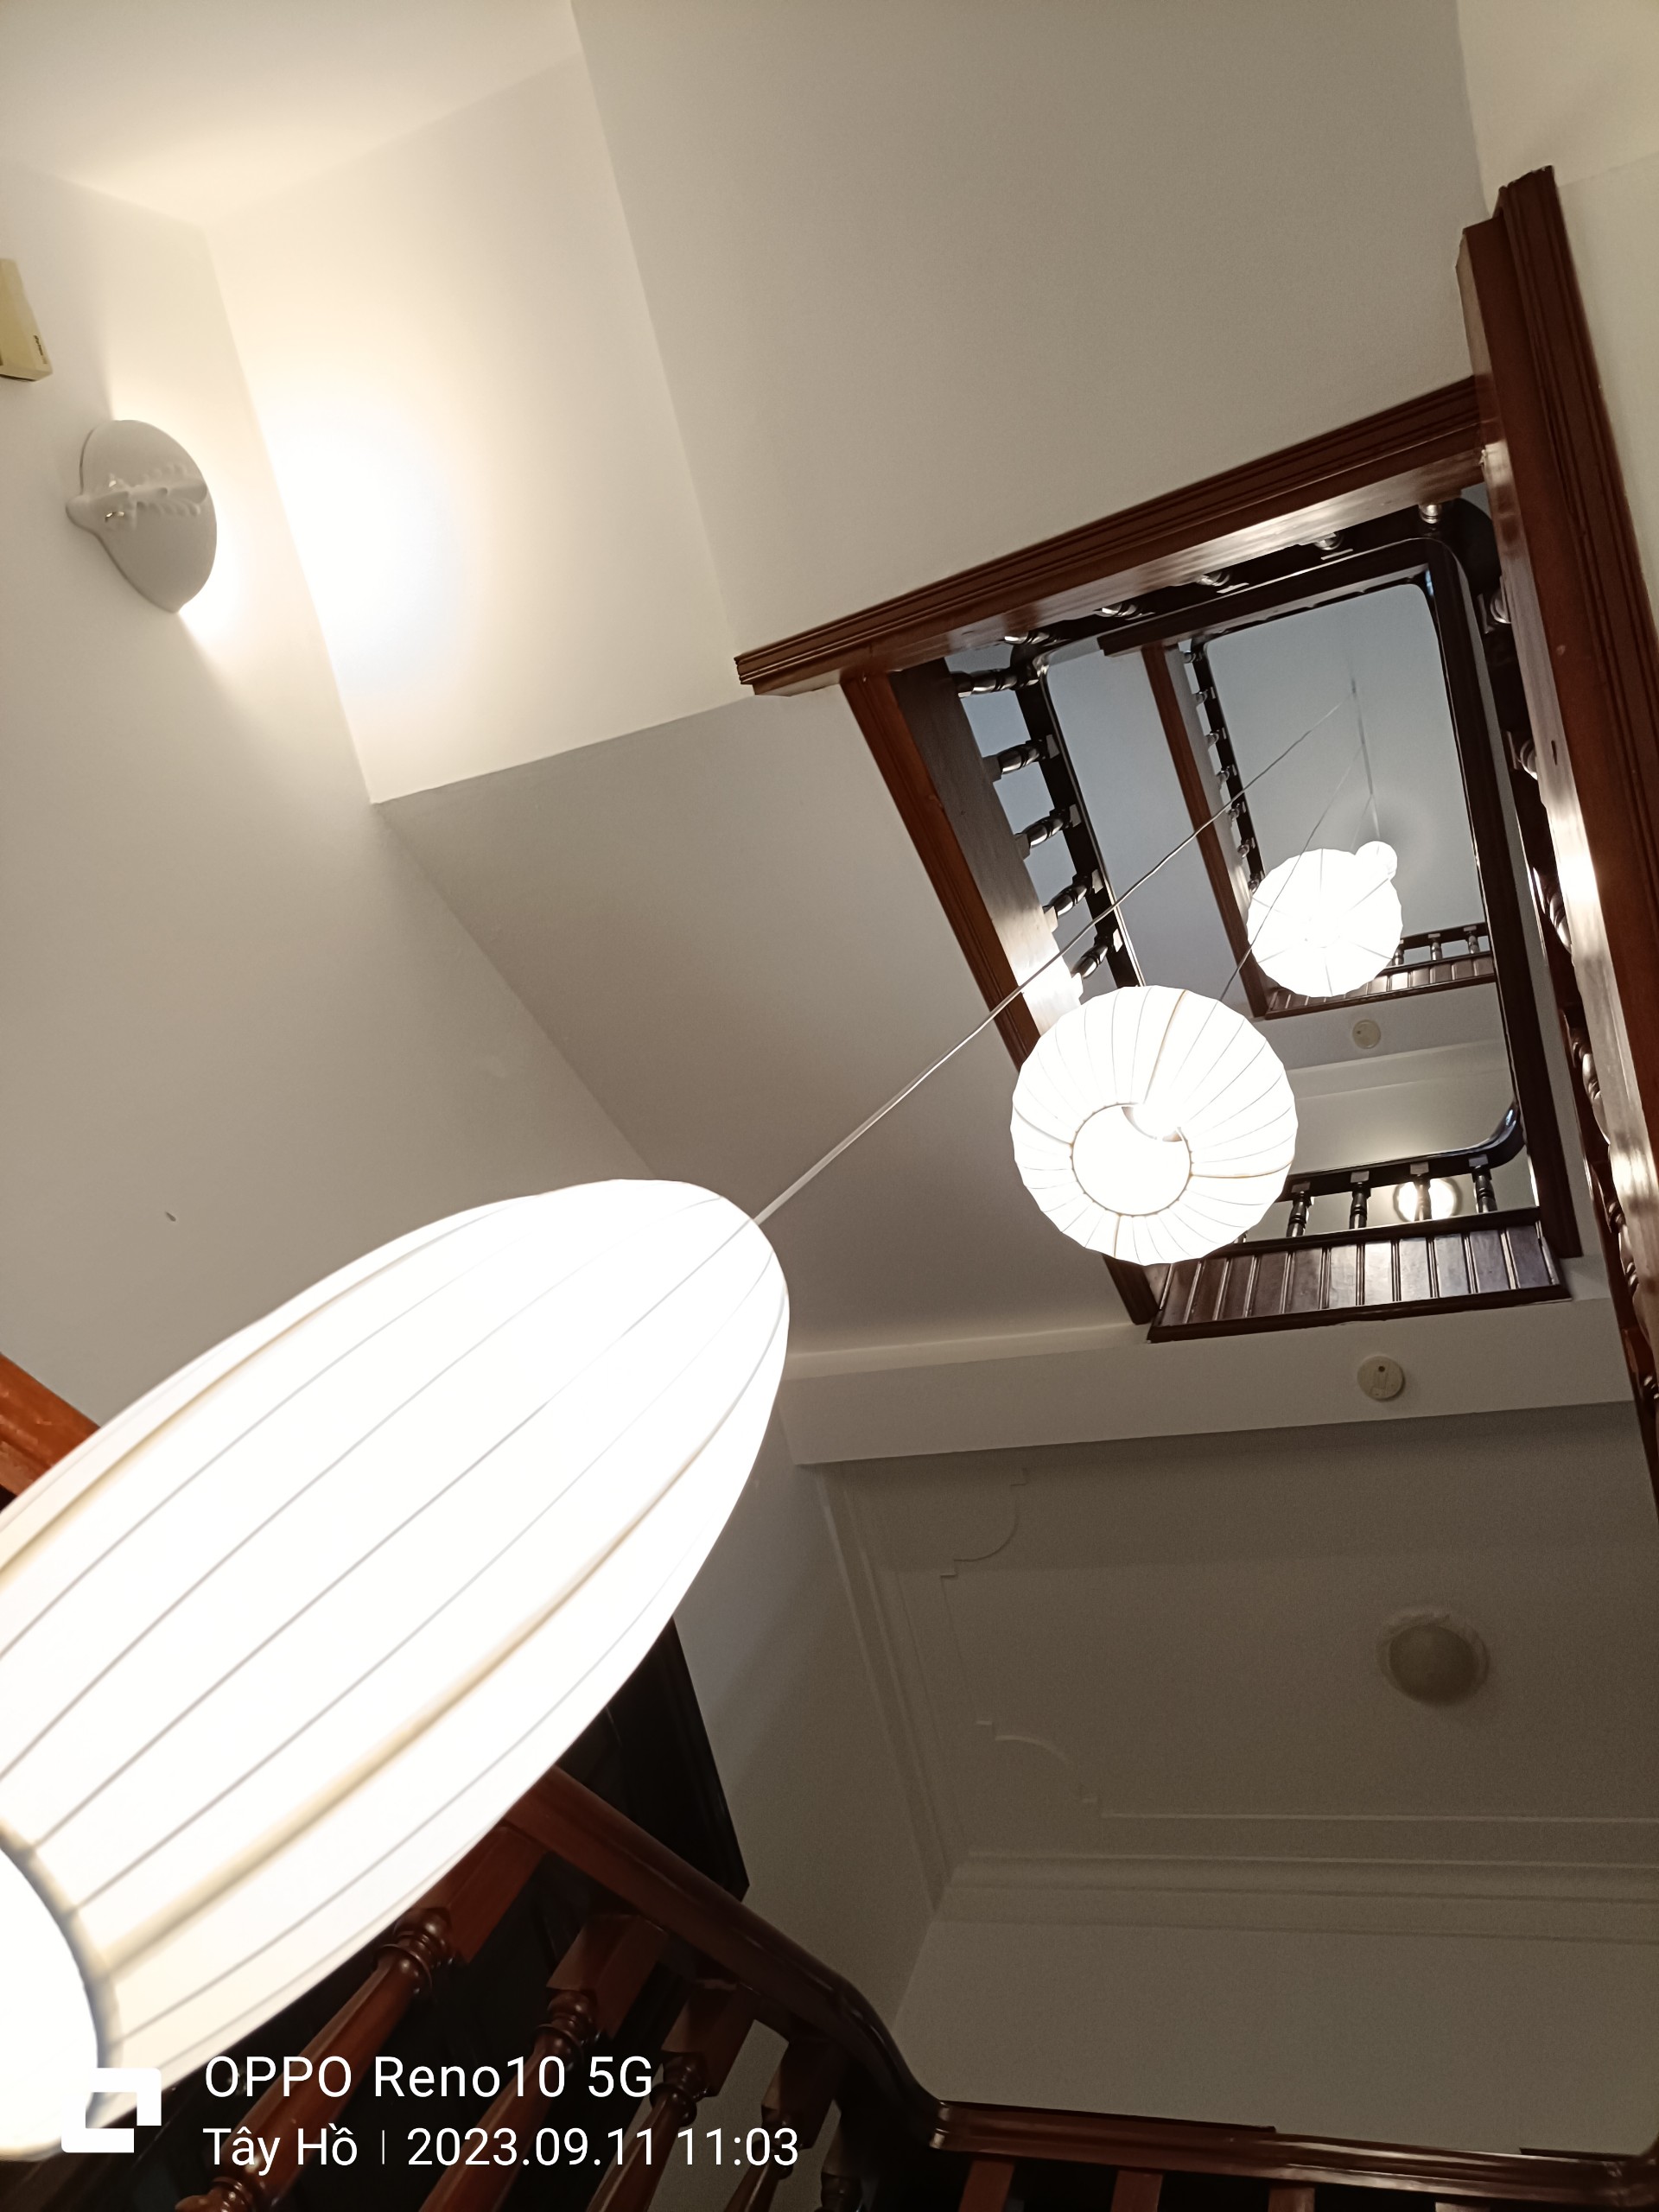 Lantern installation - stairwell decor 